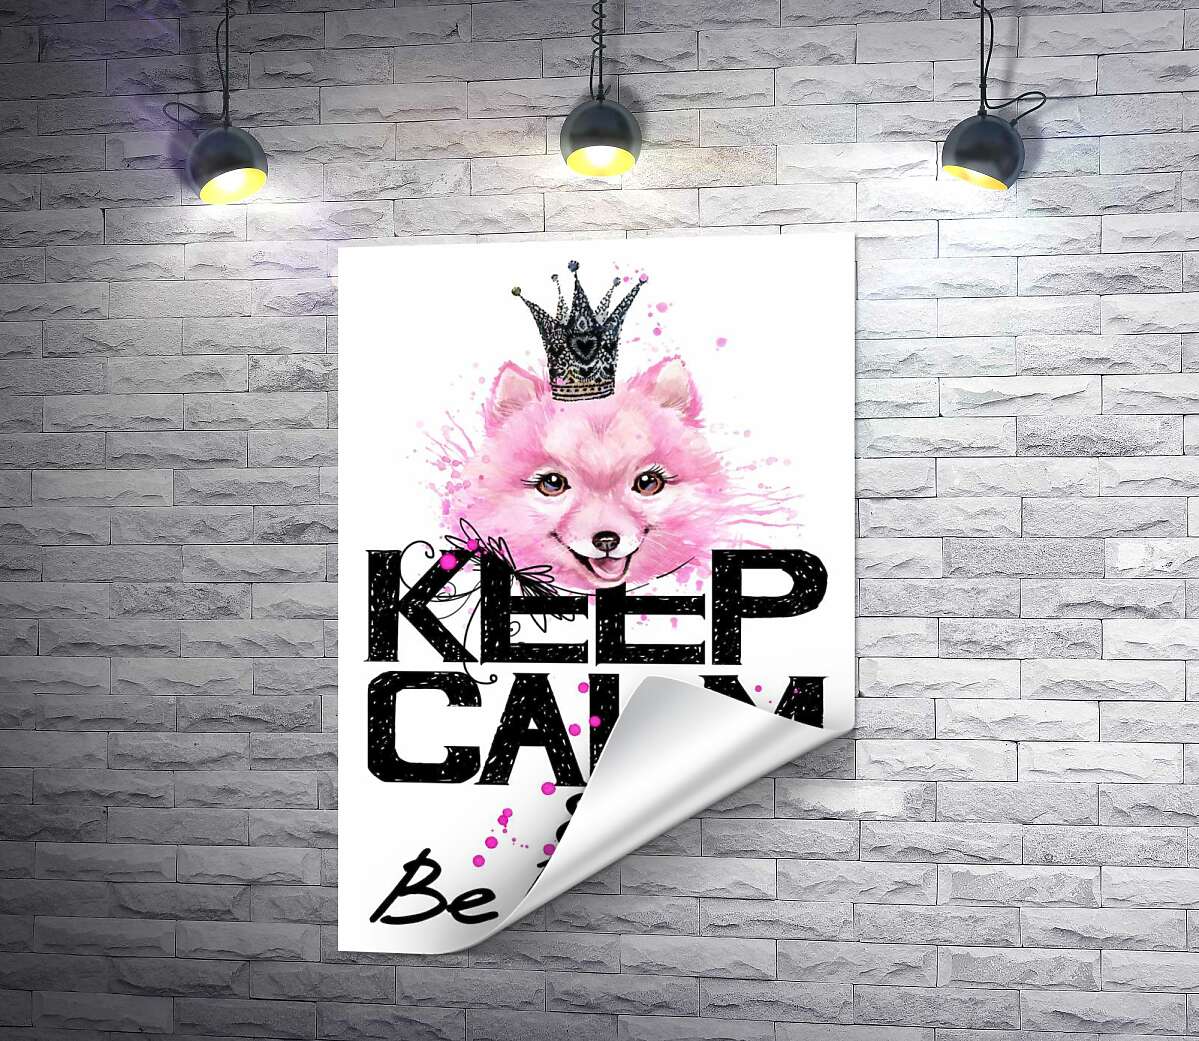 печать Розовый померанский шпиц с ажурной короной над надписью "keep calm and be princess"